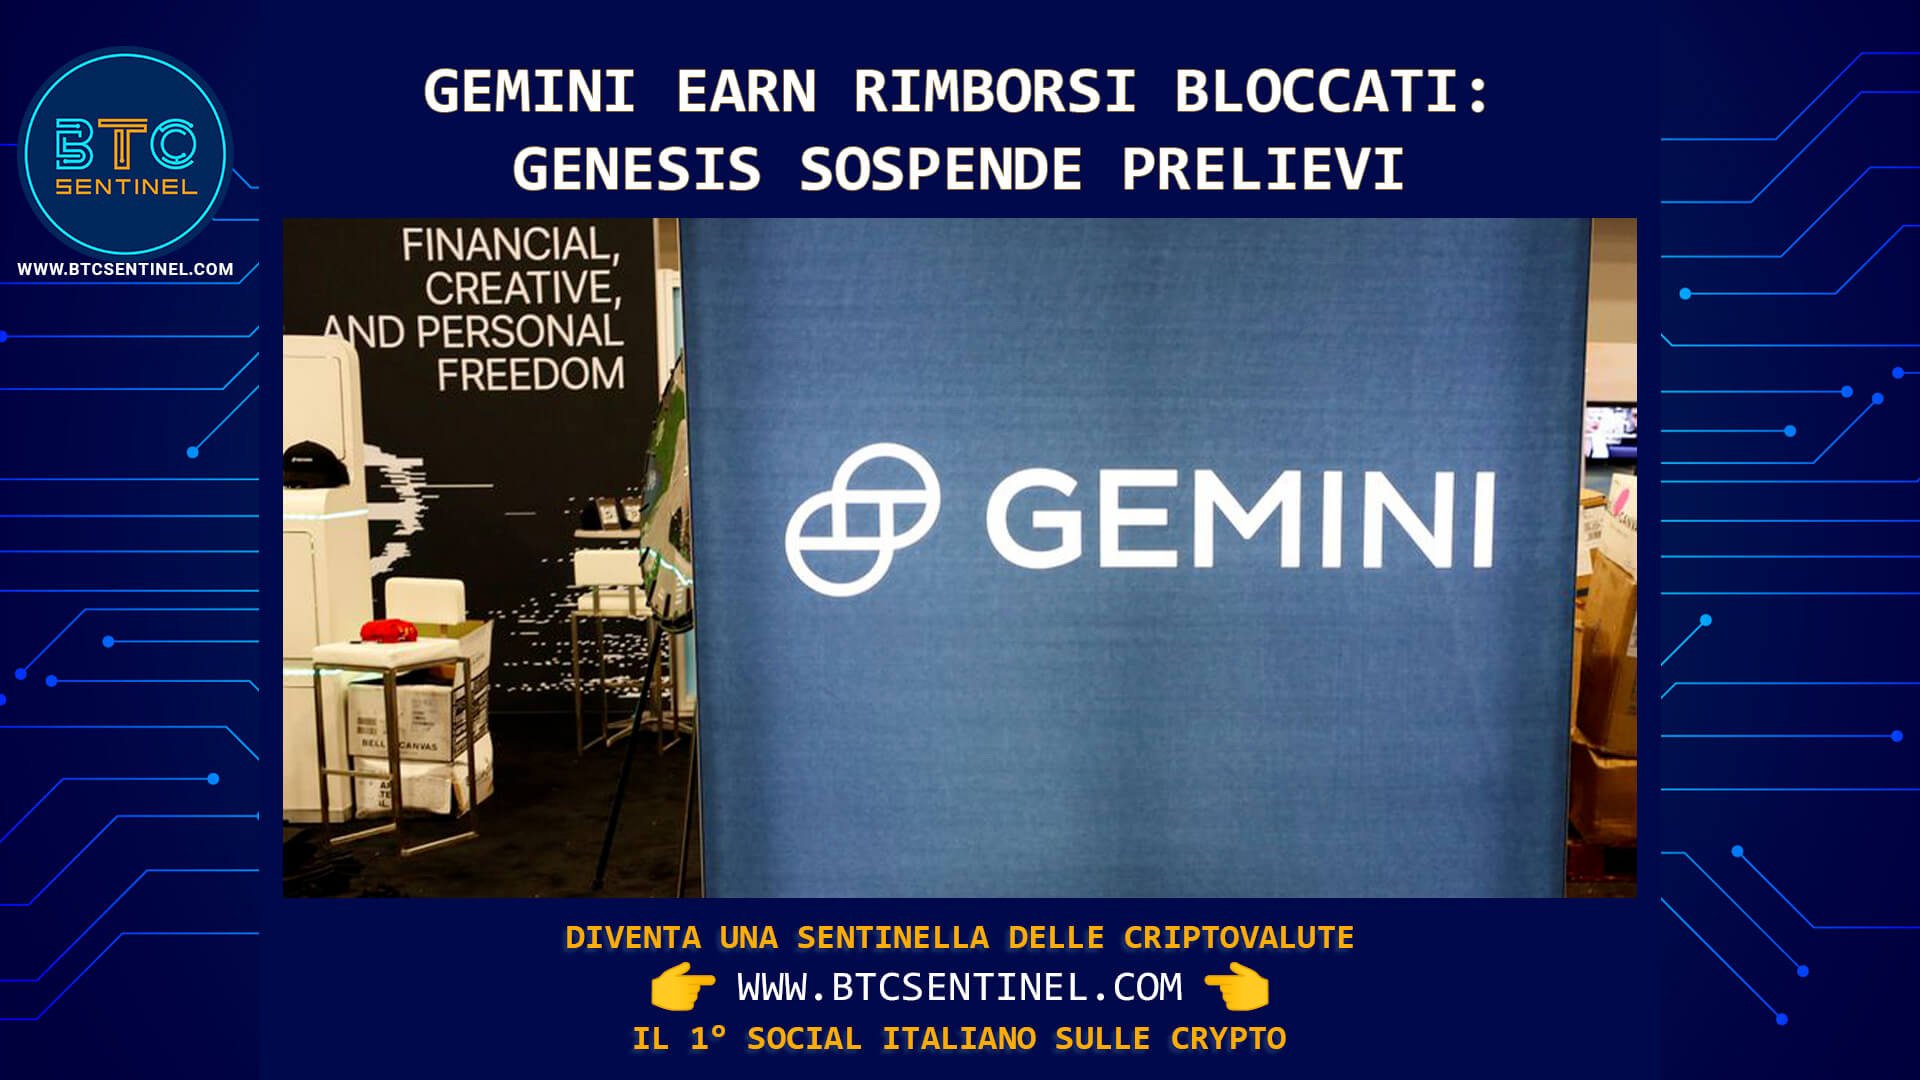 Gemini ha annunciato che il suo programma Earn non sarà in grado di soddisfare i rimborsi dei clienti nei 5 giorni previsti da contratto